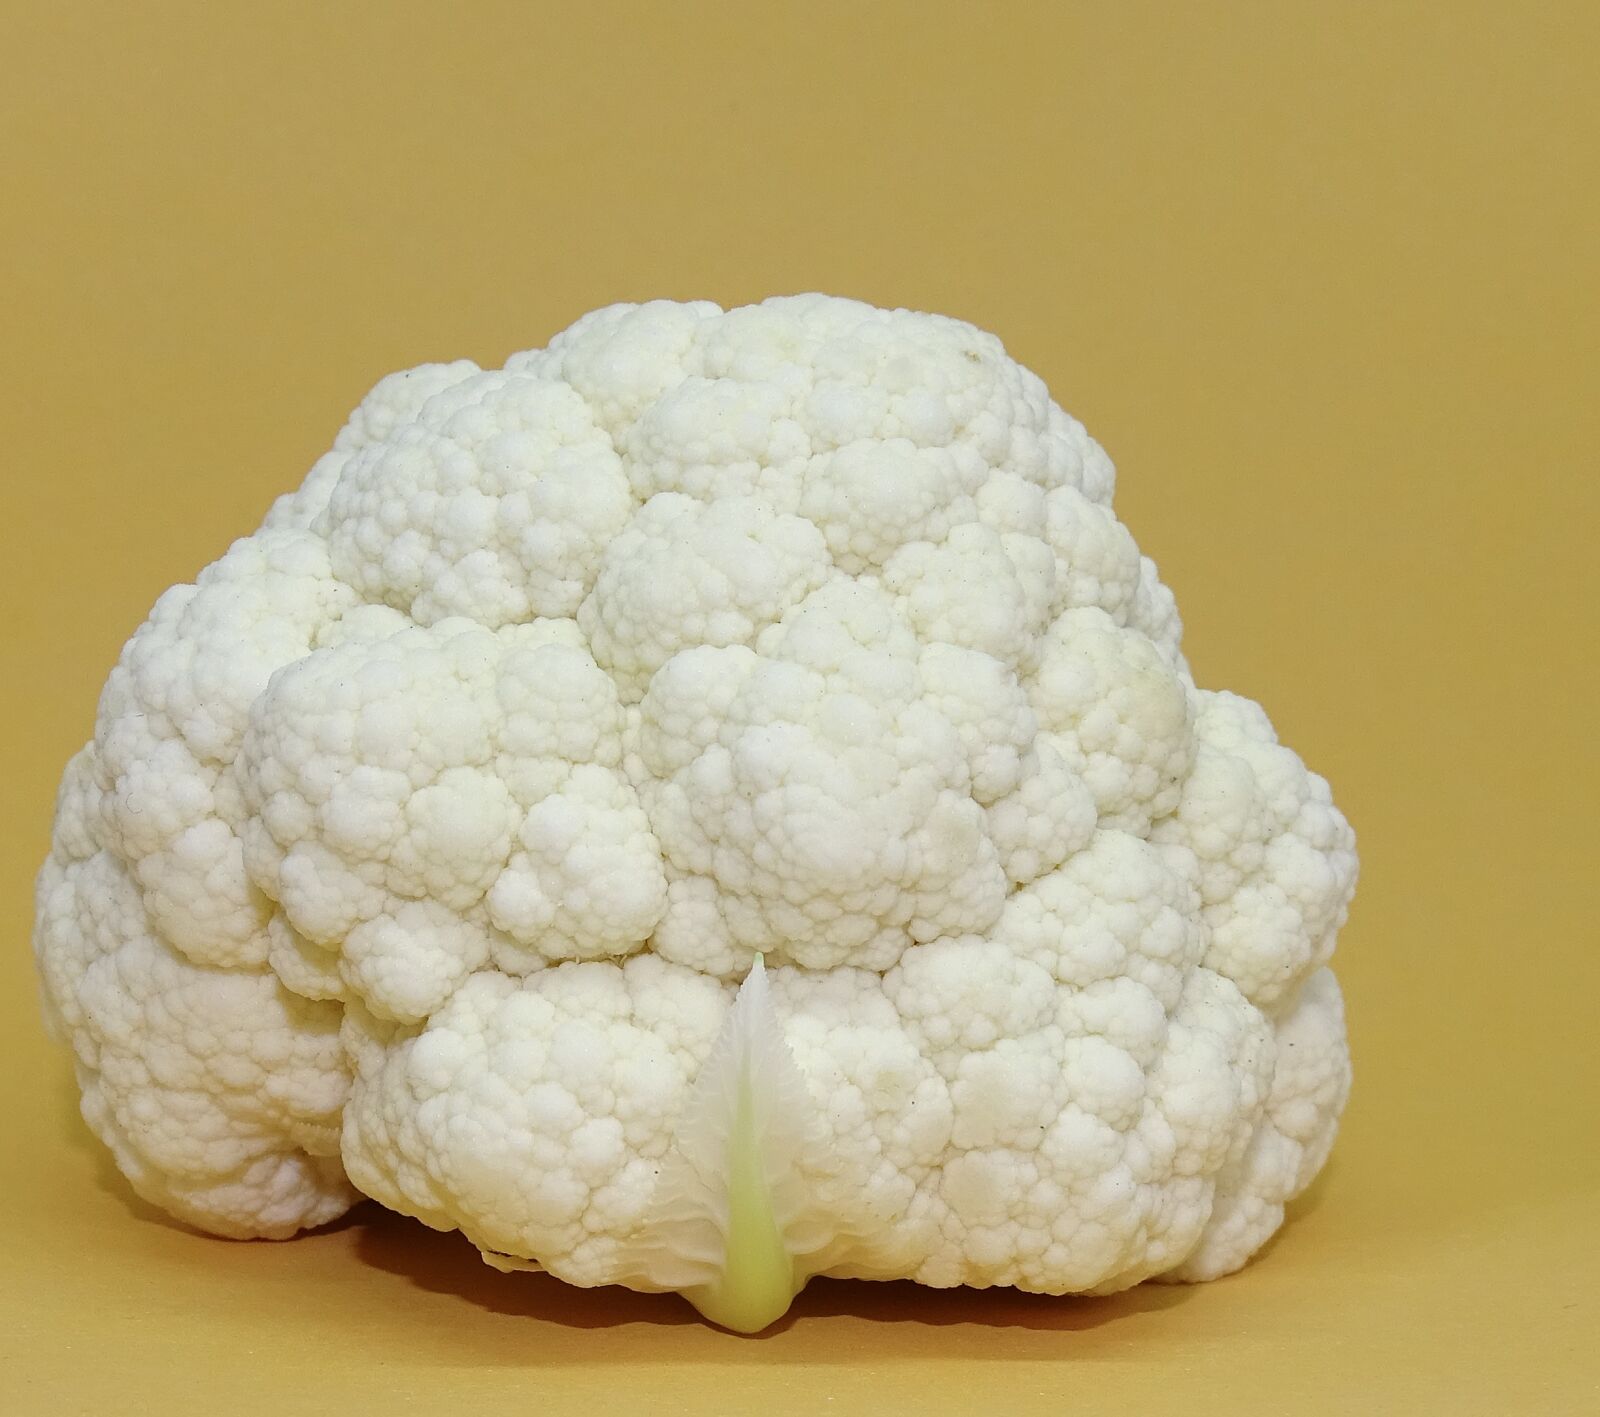 Sony Cyber-shot DSC-HX400V sample photo. Cauliflower, vegetables, healthy photography